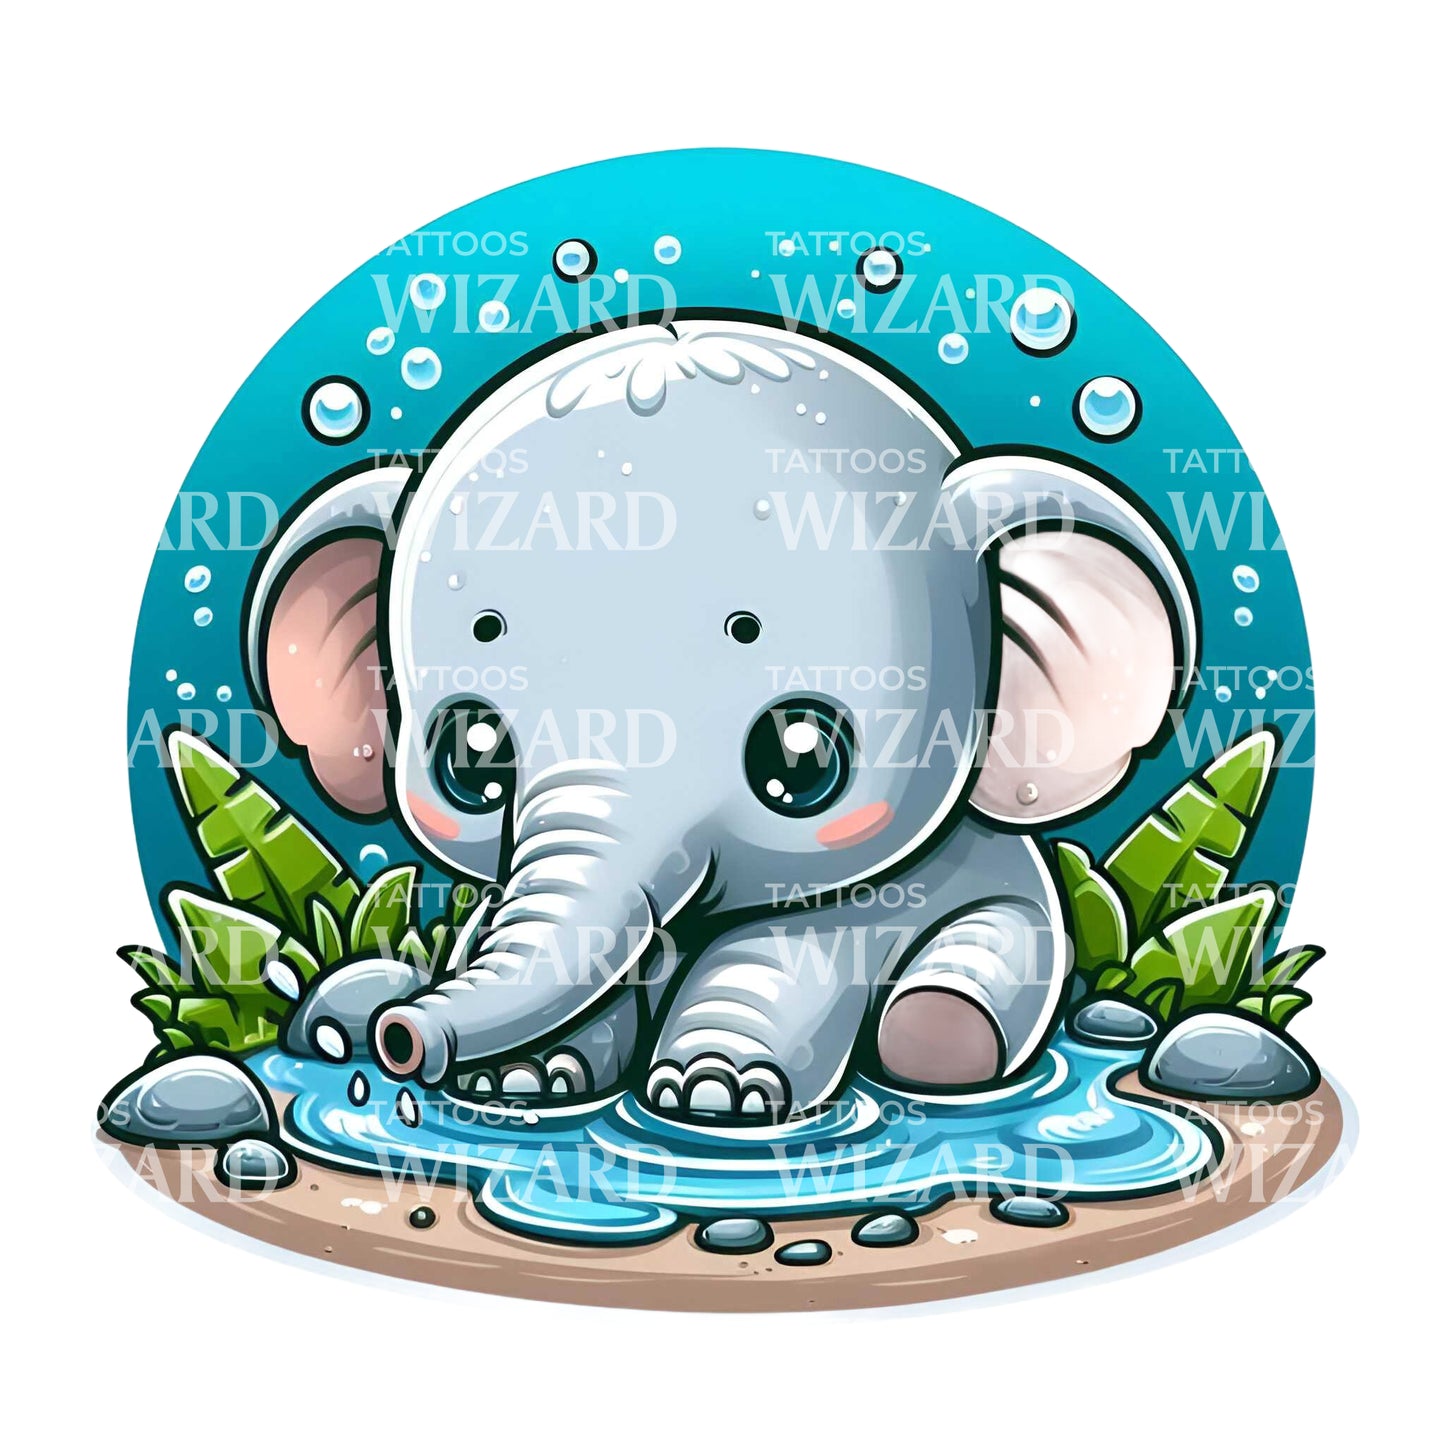 Baby Elephant Aquatic Tattoo Idea